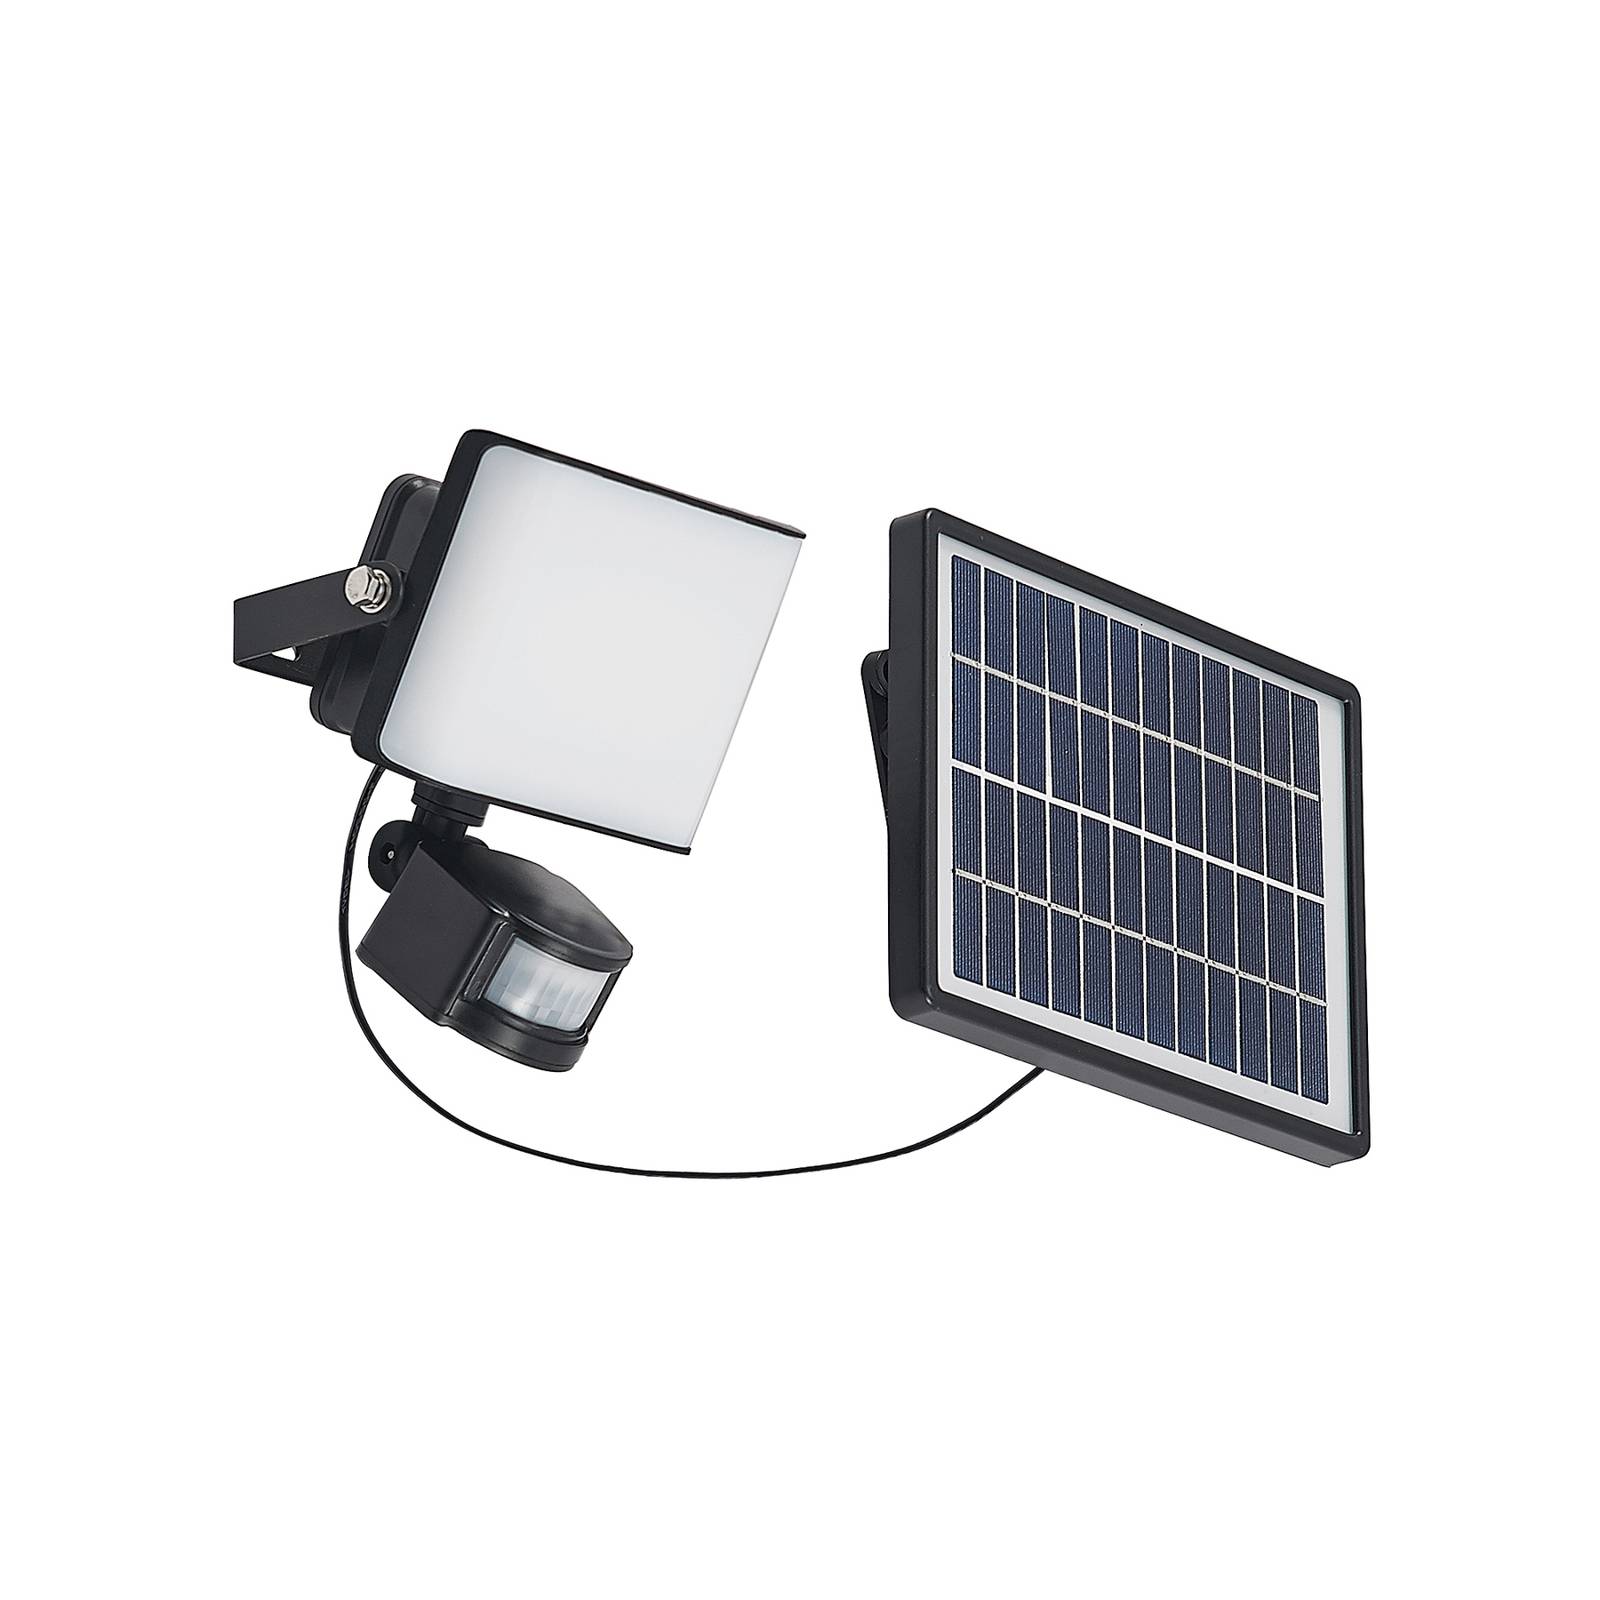 Prios Darini LED napelemes fali lámpa érzékelővel